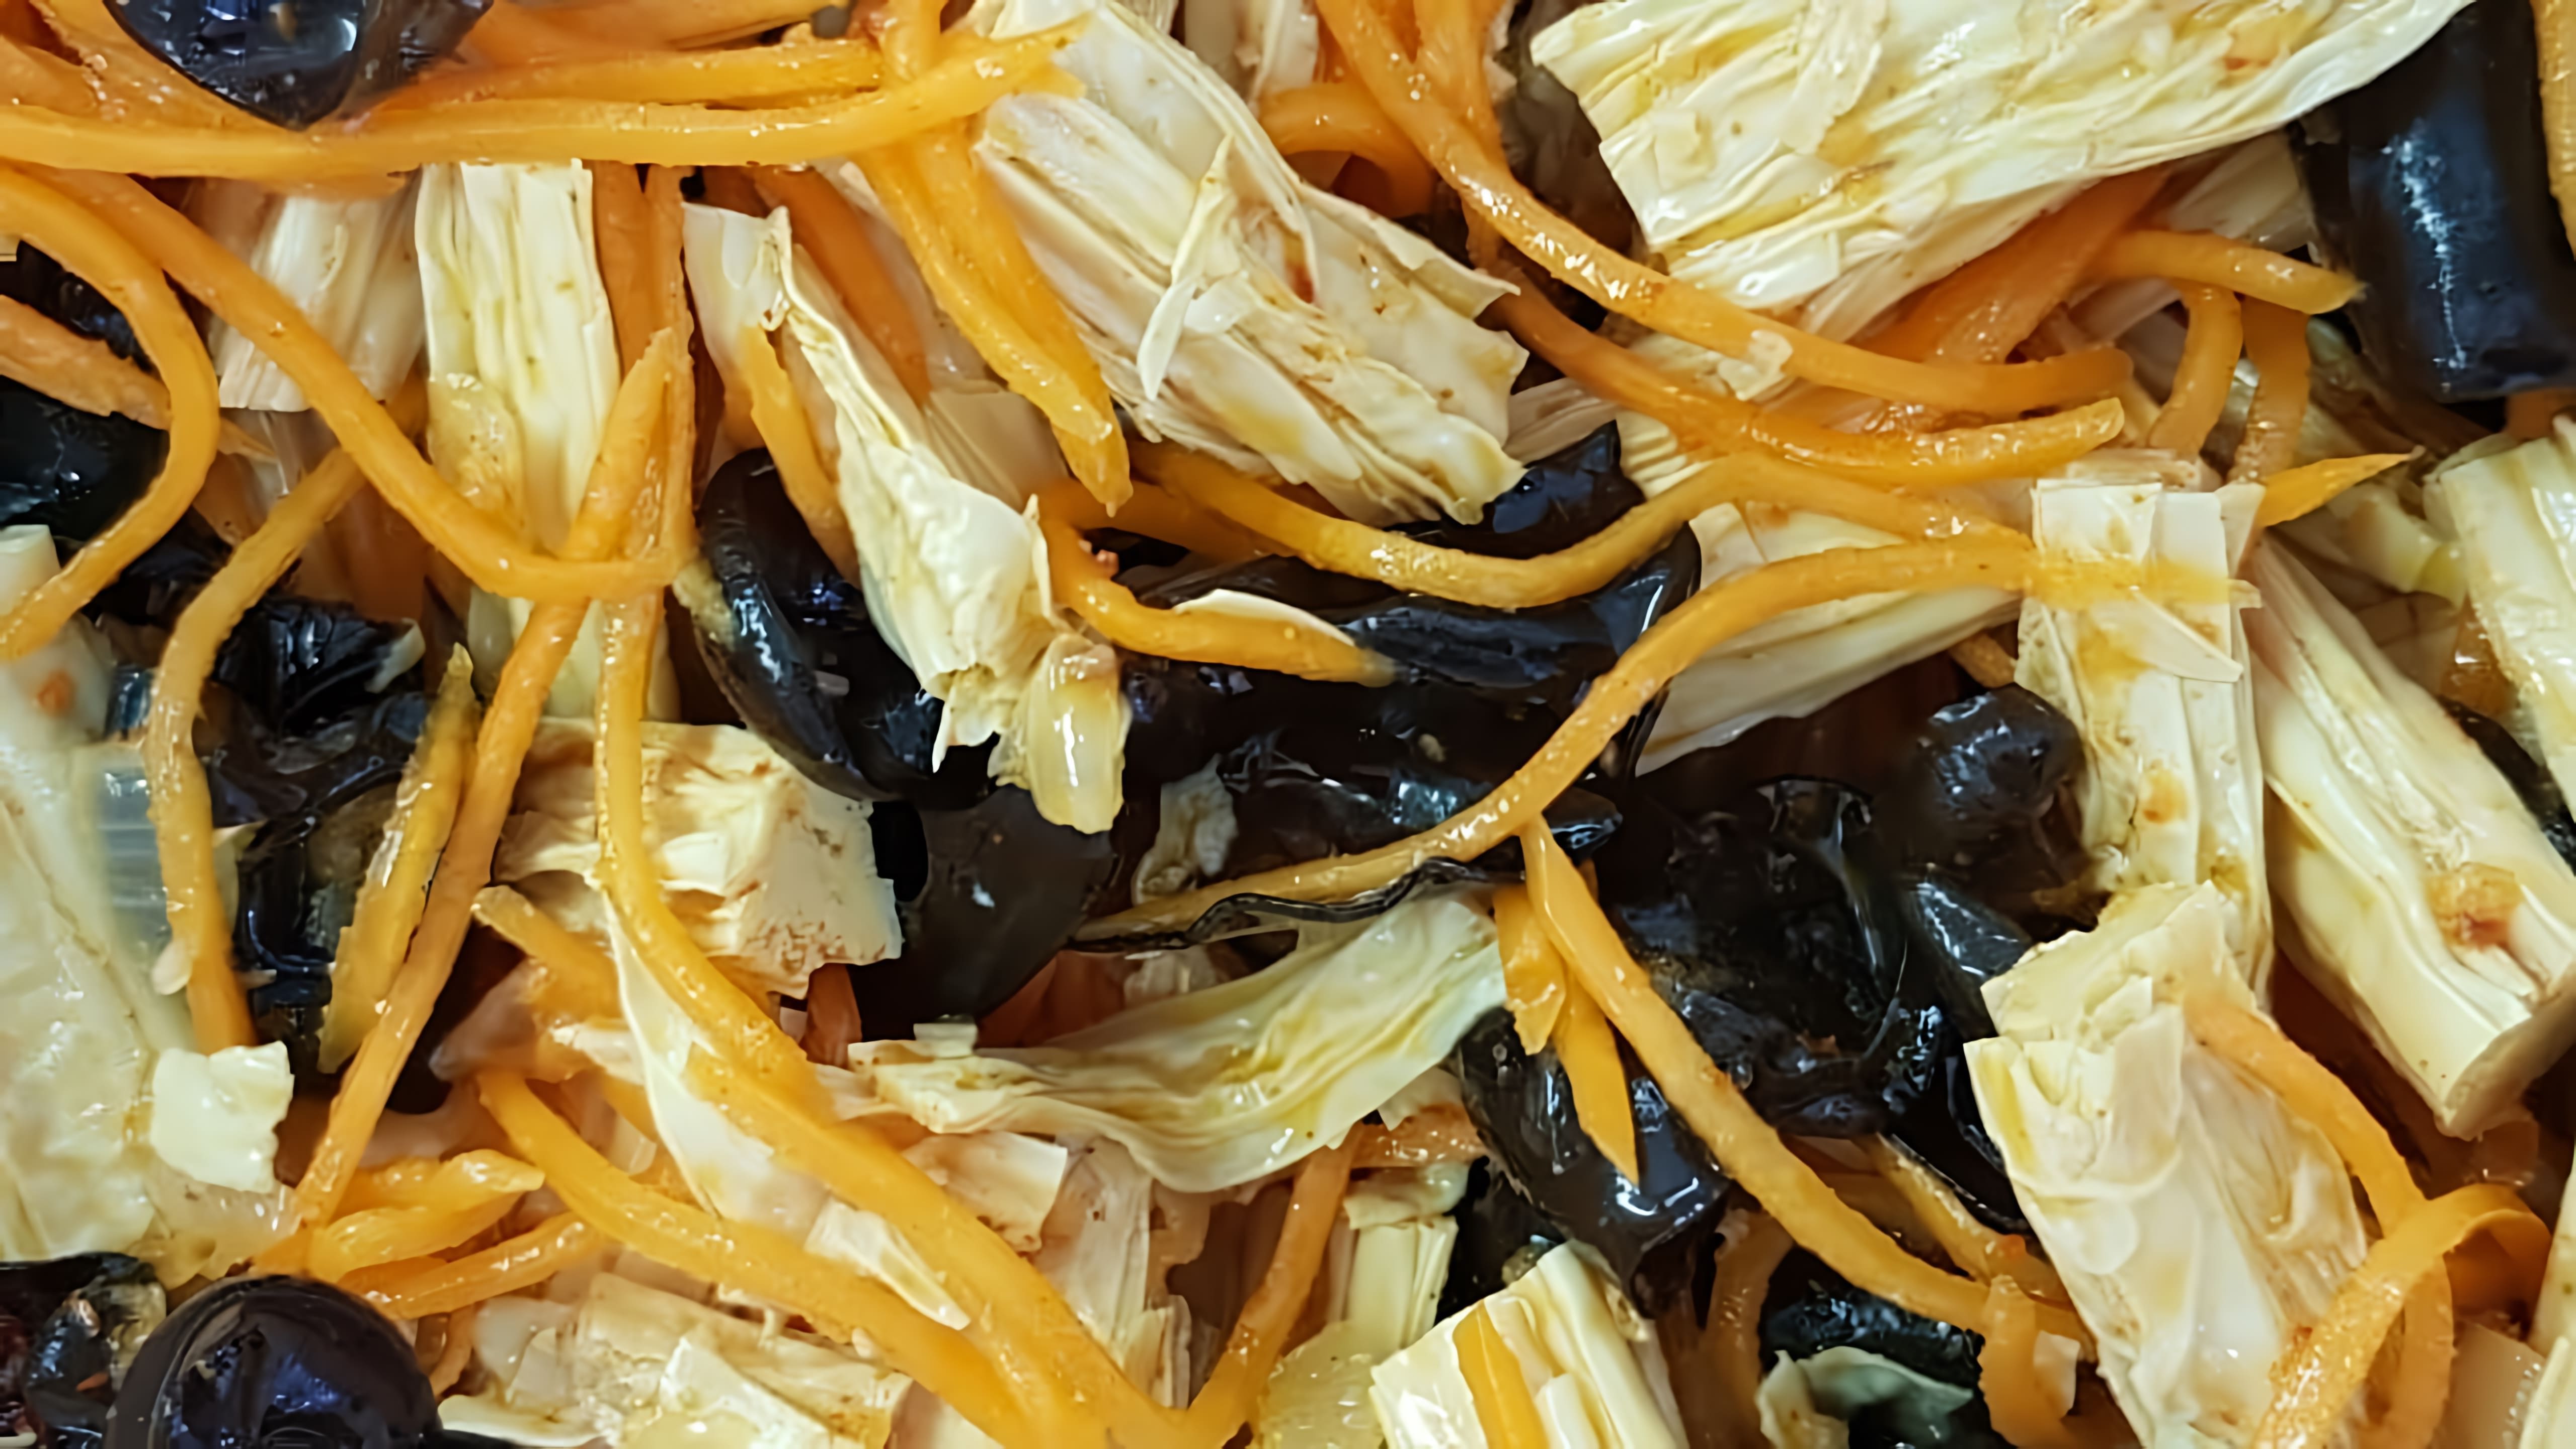 Салат из соевой спаржи по-корейски/спаржа с грибами моэр/рецепт салата из спаржи - это видео-ролик, который демонстрирует процесс приготовления вкусного и полезного салата из соевой спаржи по-корейски/спаржи с грибами моэр